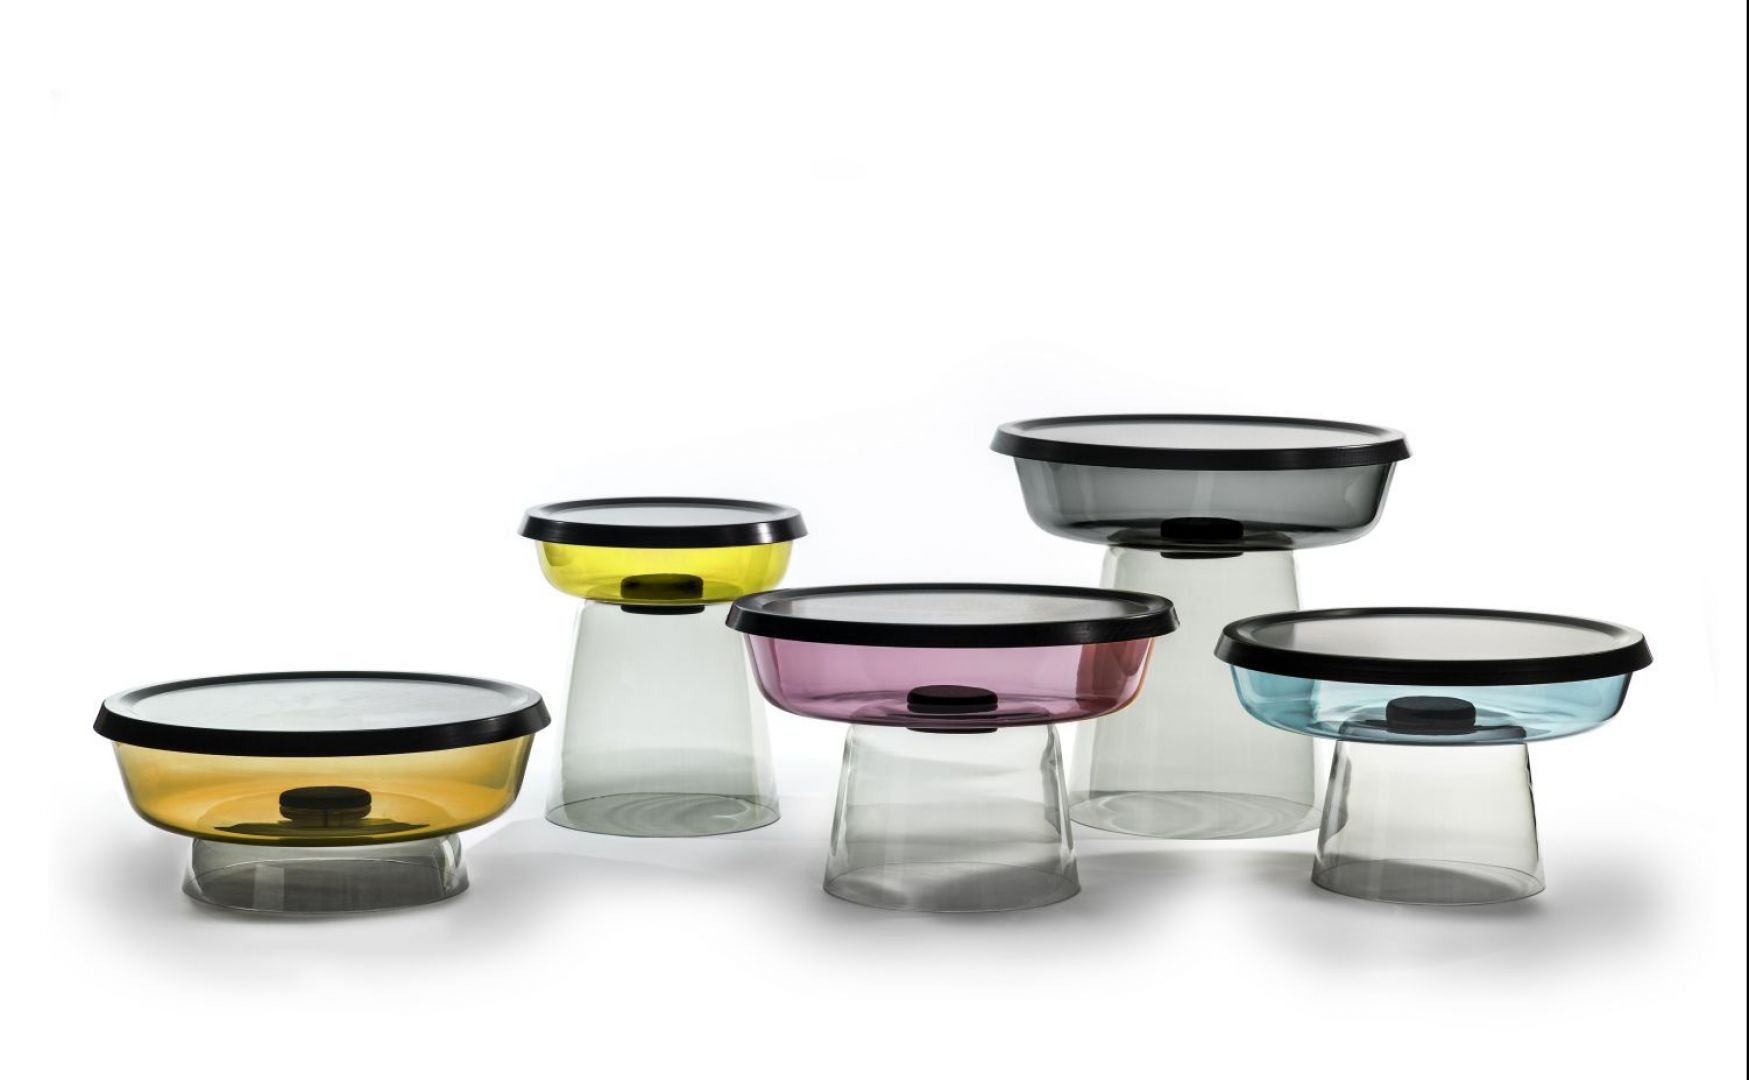 Designerskie stoliki wyglądające jak kolorowe pojemniczki. Projekt: Lucie Koldova